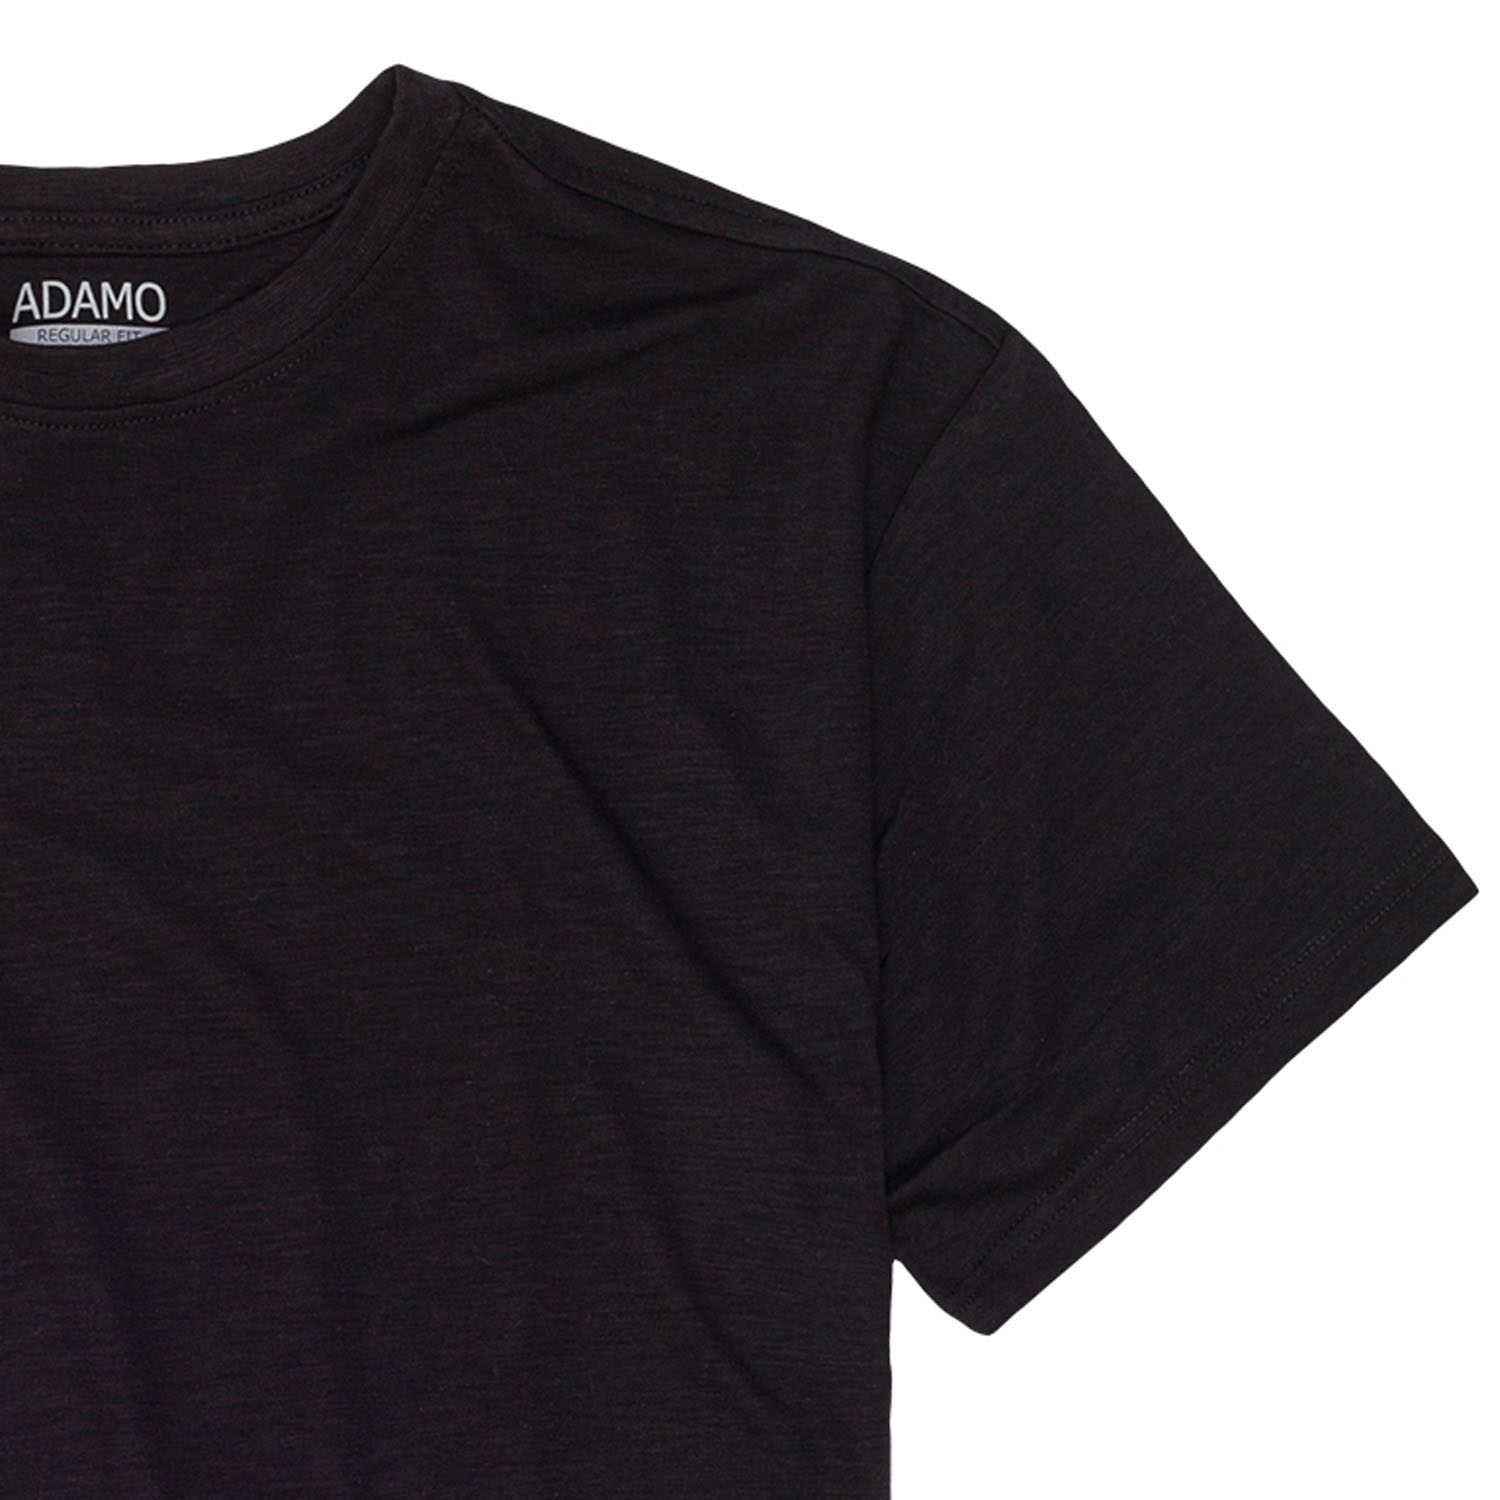 T-shirt série Kevin effet flammé by ADAMO jusqu'à la grande taille 12XL - couleur: noir